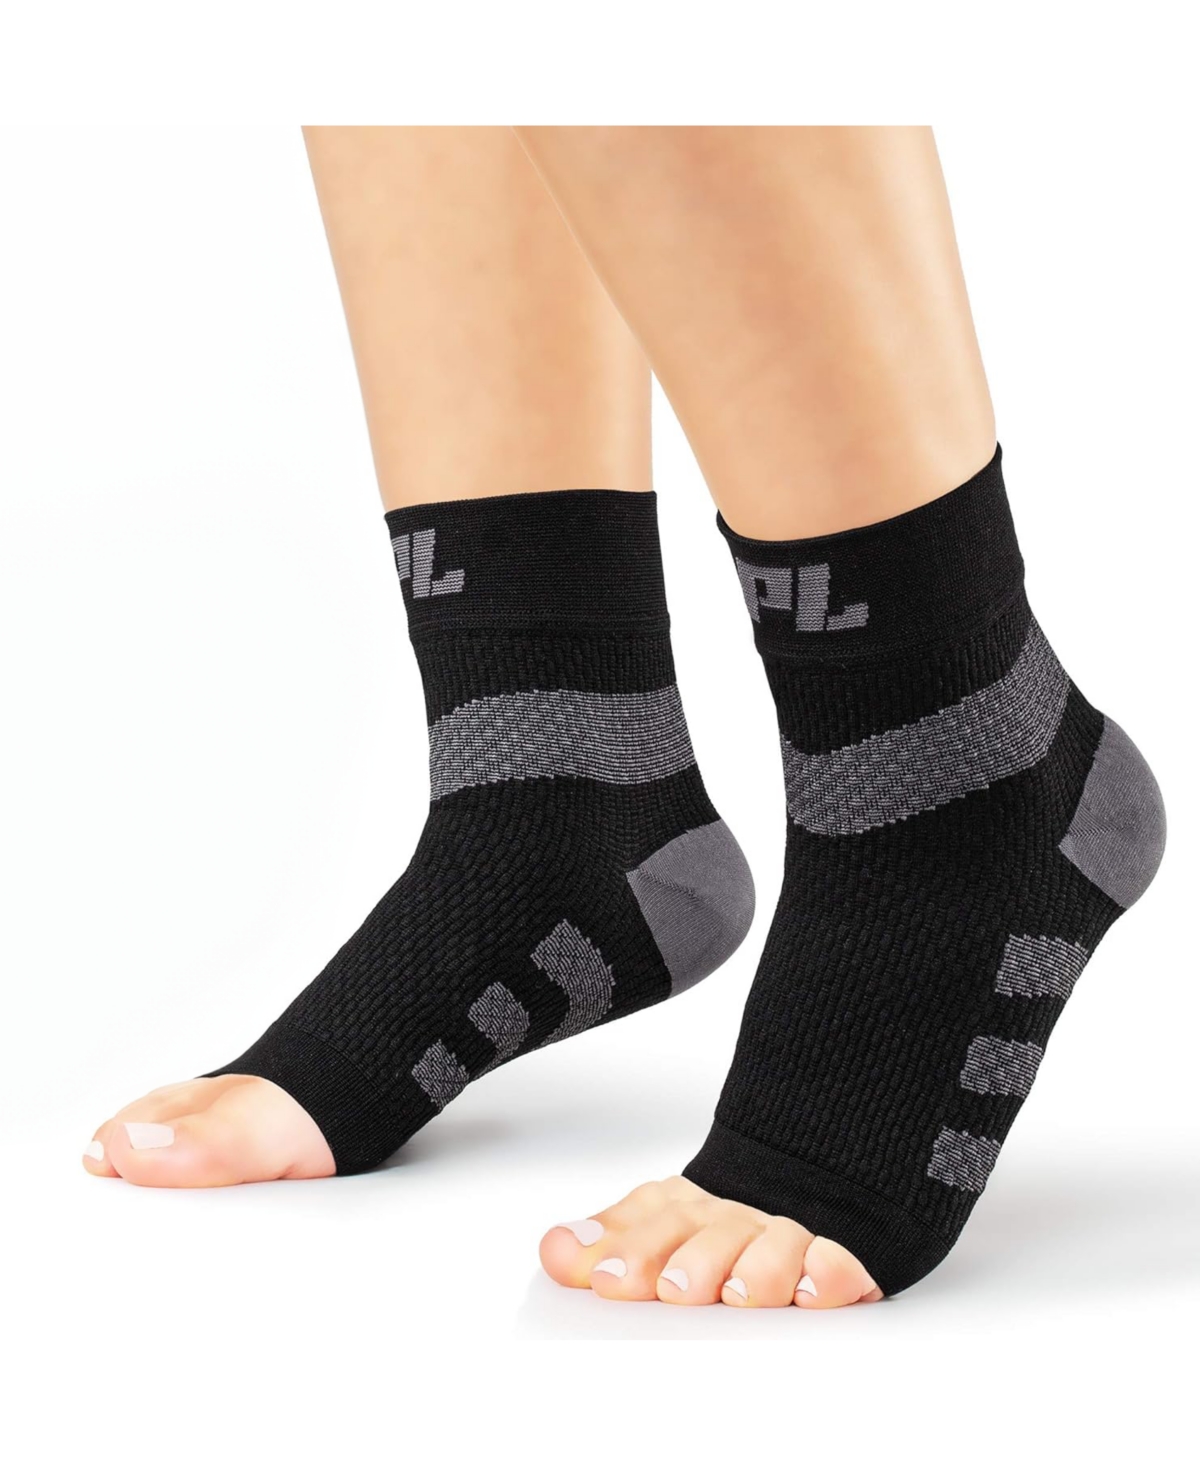 Small Orthopedic Feet Brace Women & Men: for Arthritis, Tendinitis - 1 Pair - Black ( pair)